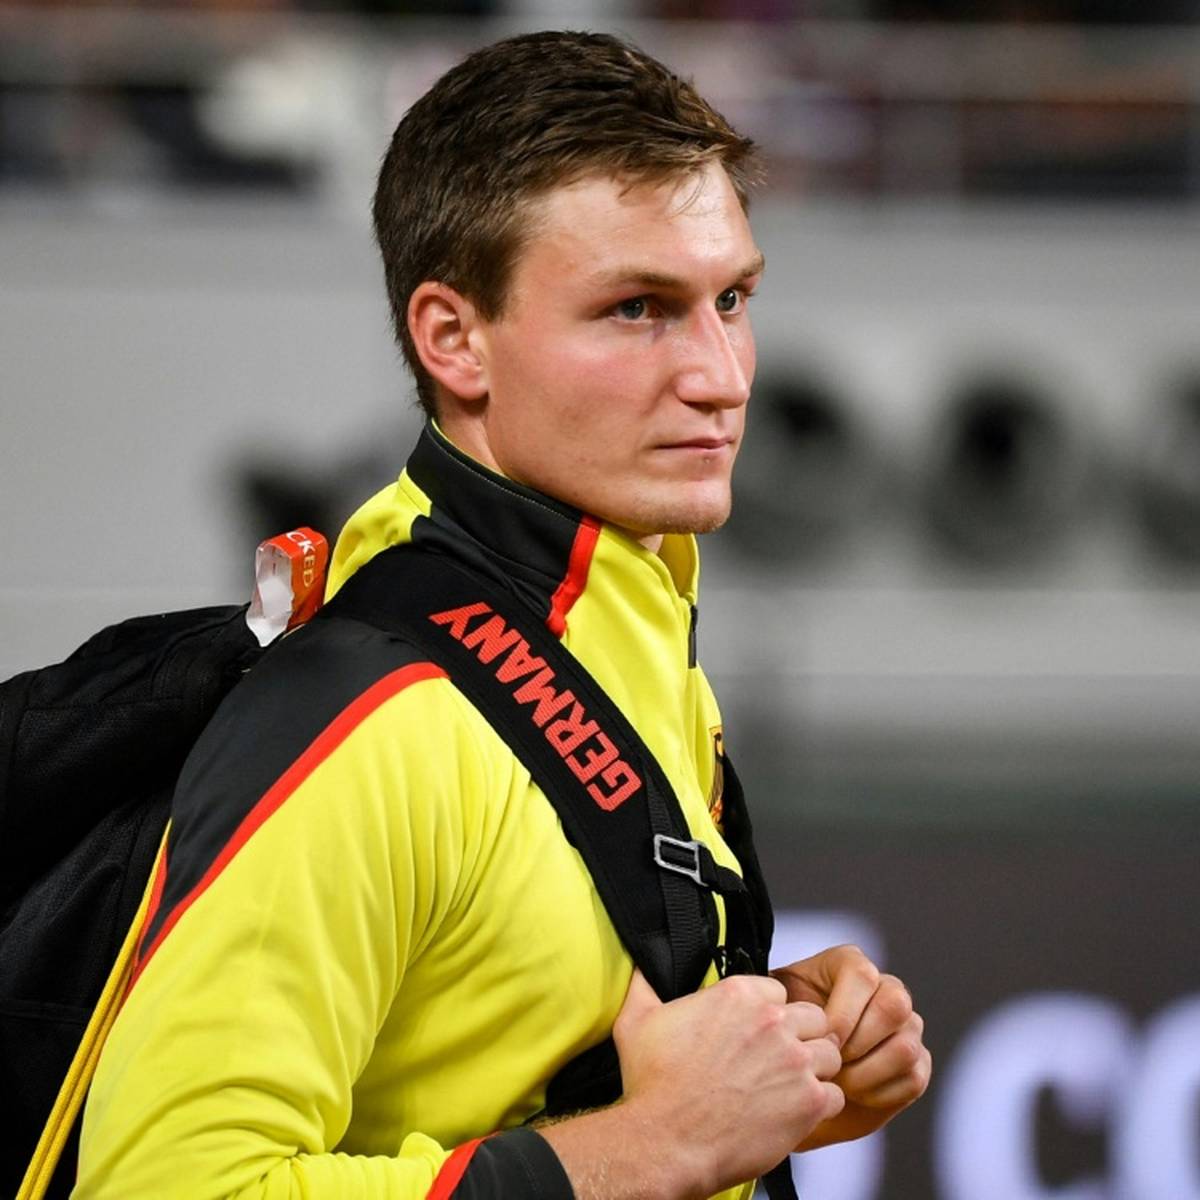 Olympiasieger Thomas Röhler schraubt die Erwartungen vor der Speerwurf-Qualifikation bei der Heim-EM etwas herunter.